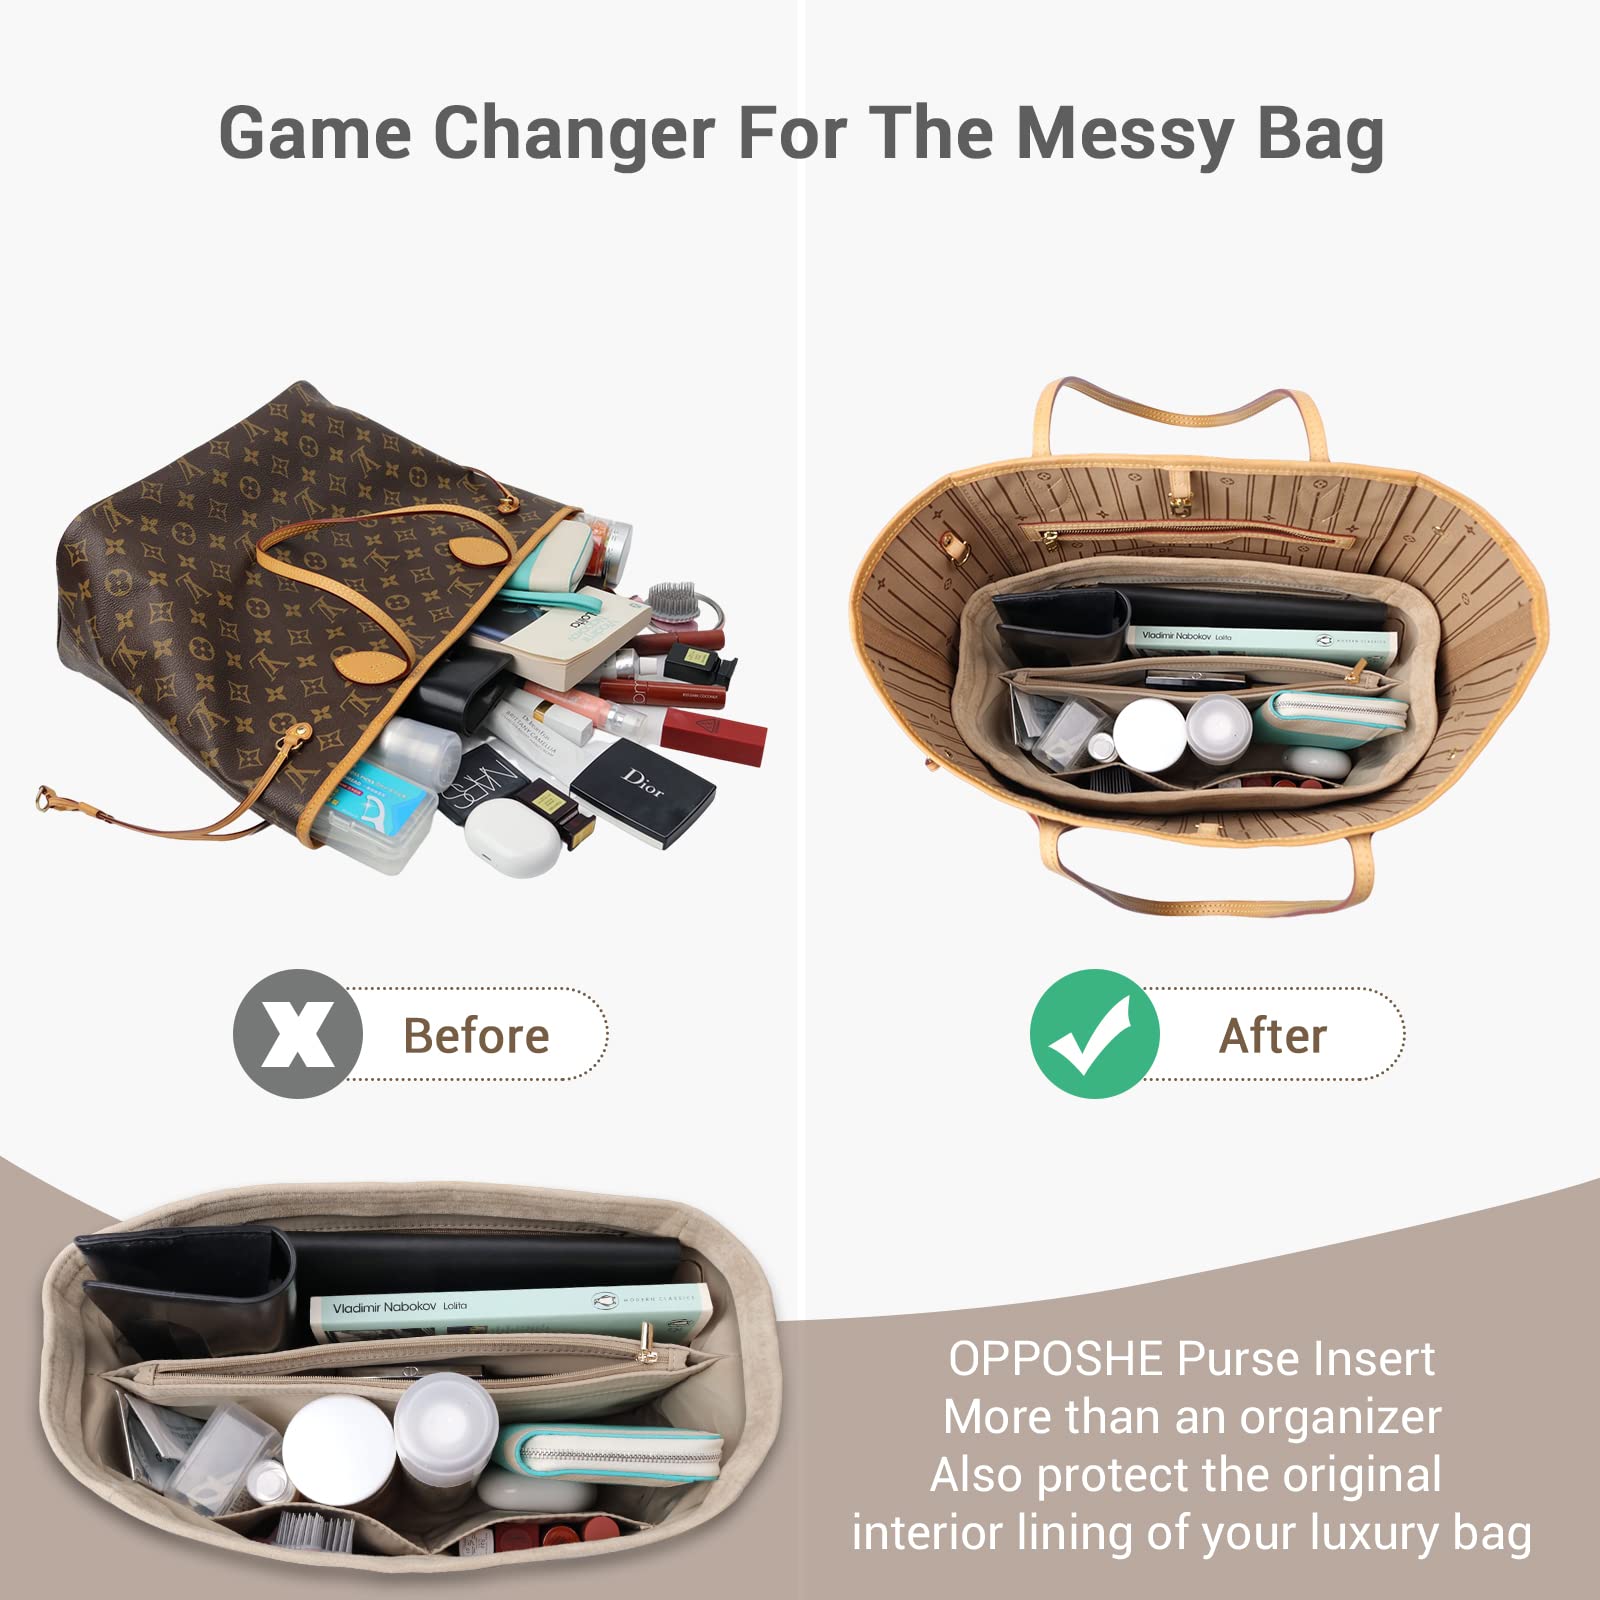 OPPOSHE 1 Opposhe Purse Organizer Insert For Handbags, Softened Felt Bag  Insert Organizer For Tote, Handbag Organizer Compatible With Lv